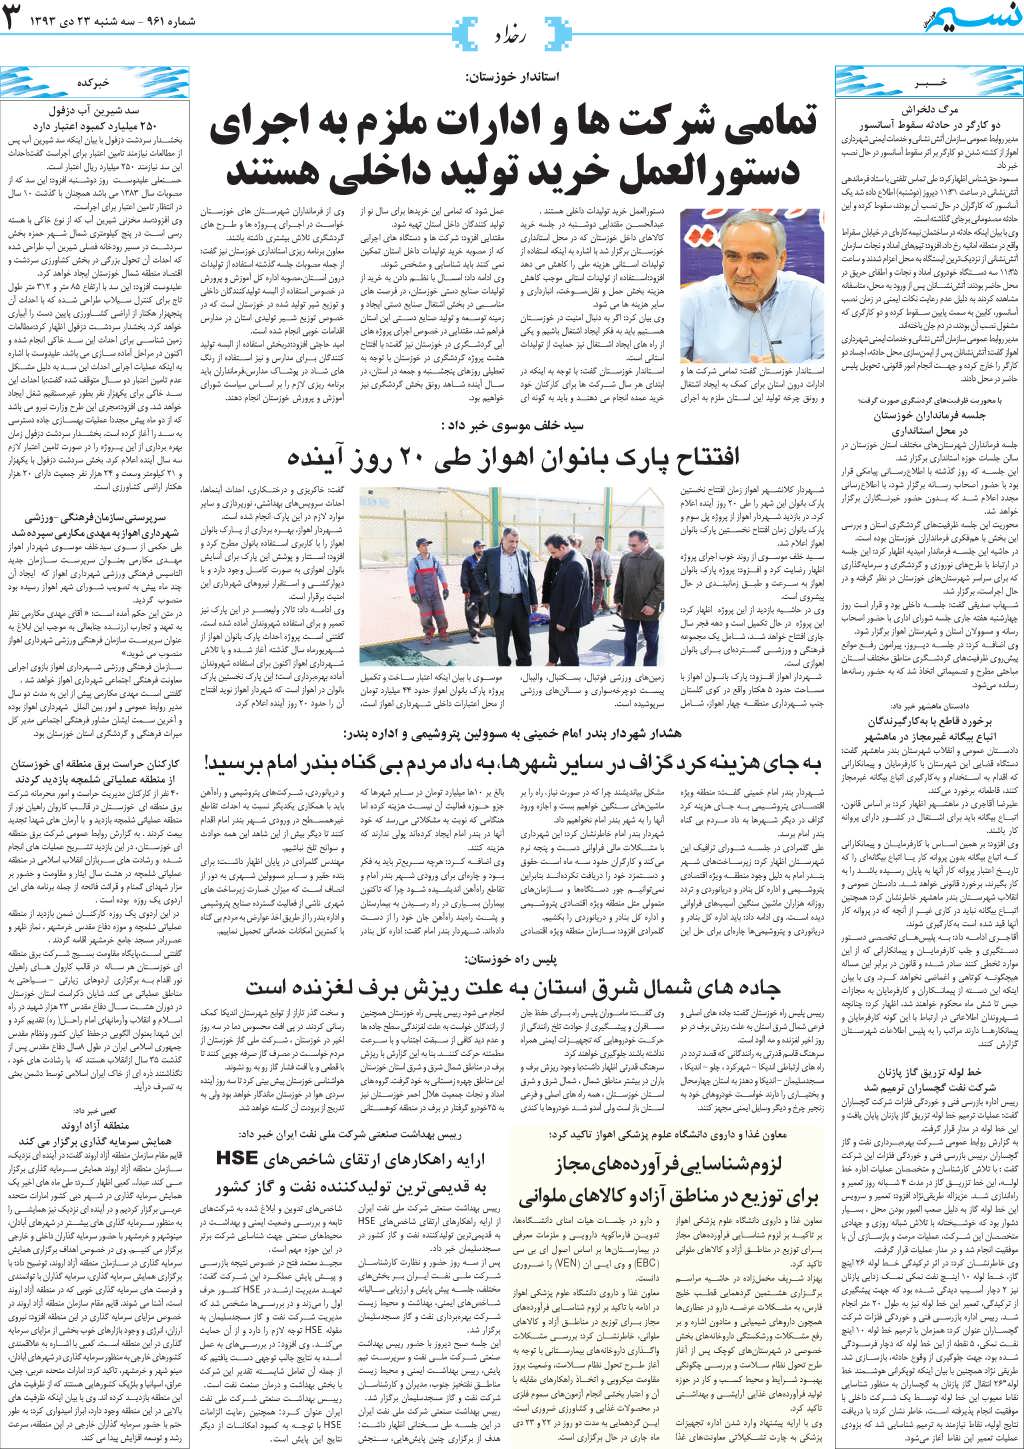 صفحه رخداد روزنامه نسیم شماره 961